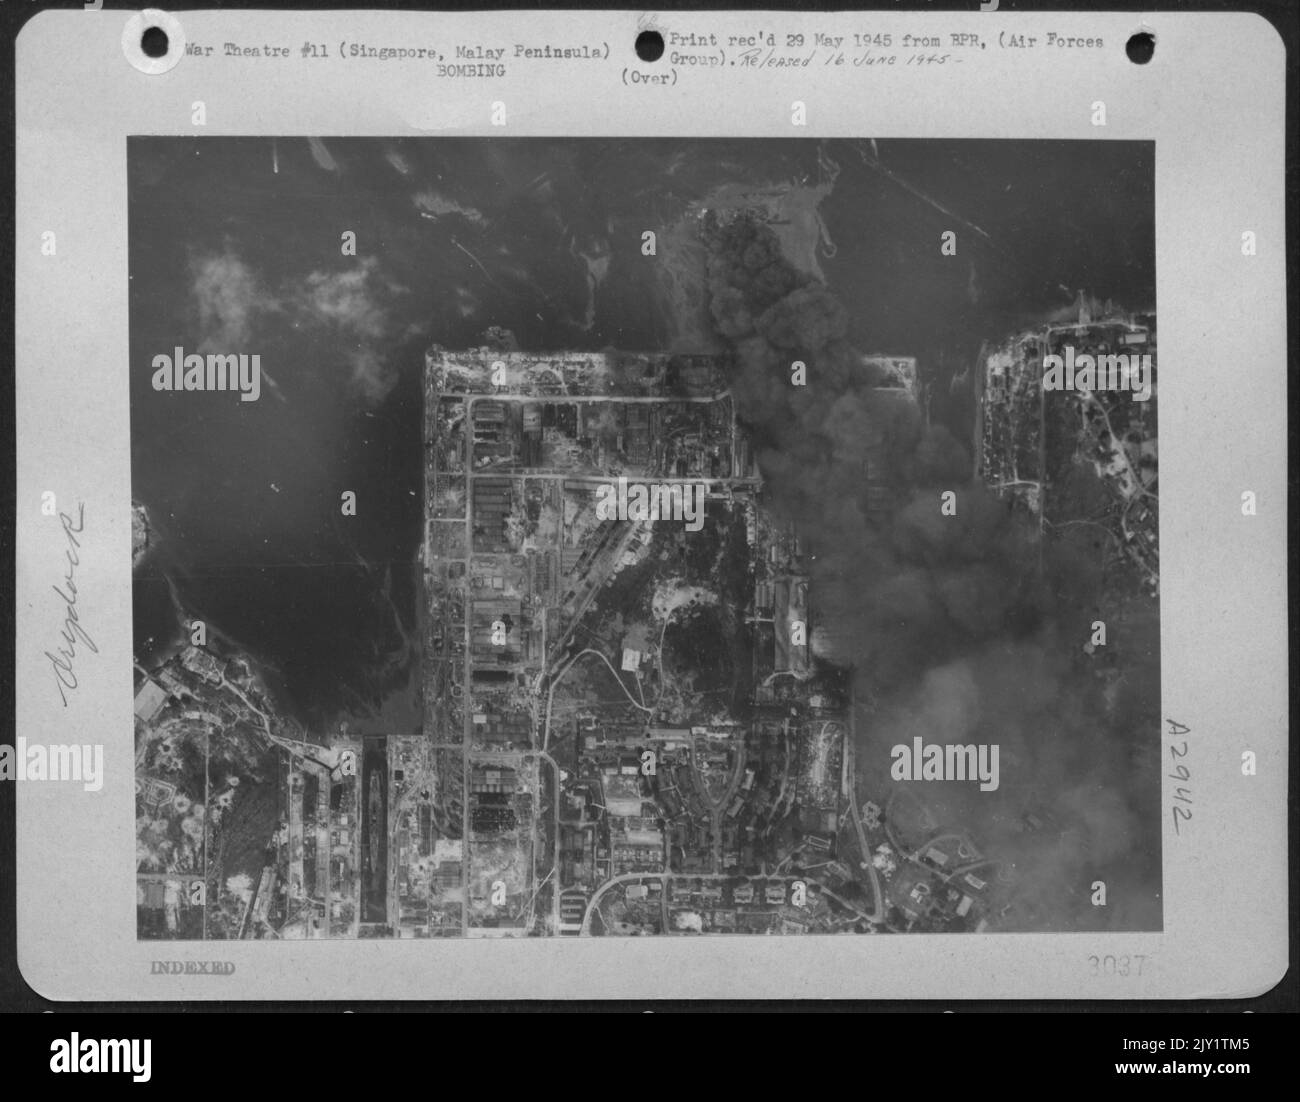 Un énorme nuage de fumée noire coule du pont flottant de Singapour et de son bateau après avoir été frappé par 1 000 bombes Pound larguées par des superforteresses B-29. Banque D'Images